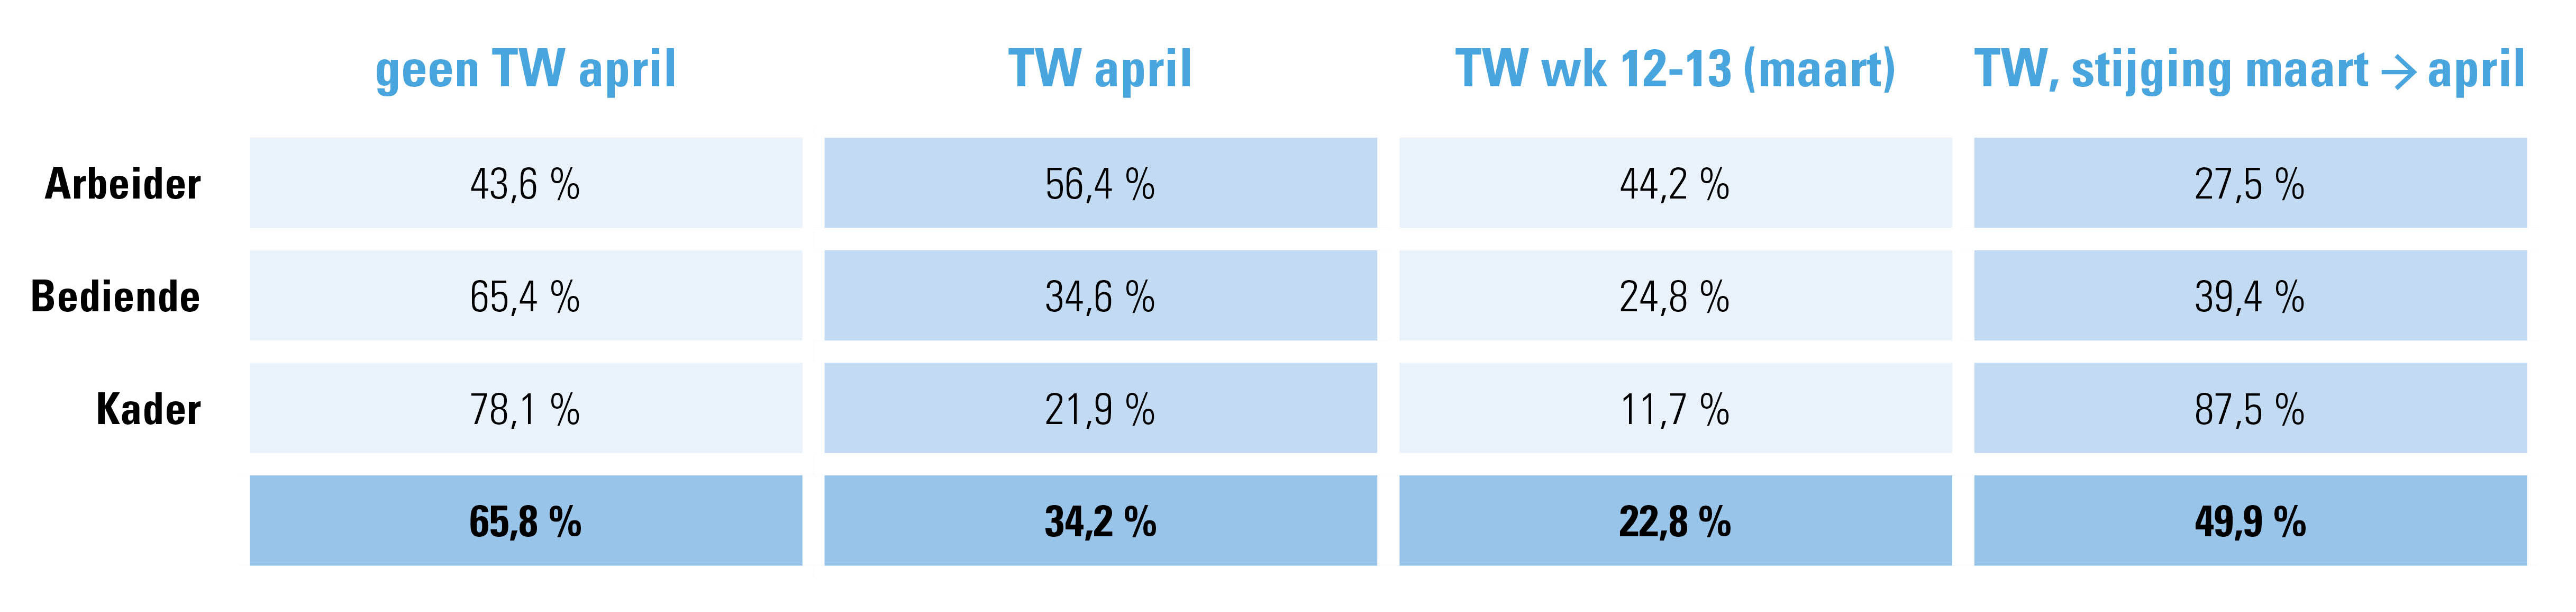 Tabel 1:  % werknemers minstens 1 dag tijdelijke werkloosheid per statuut, tweede helft maart en volledig april 2020